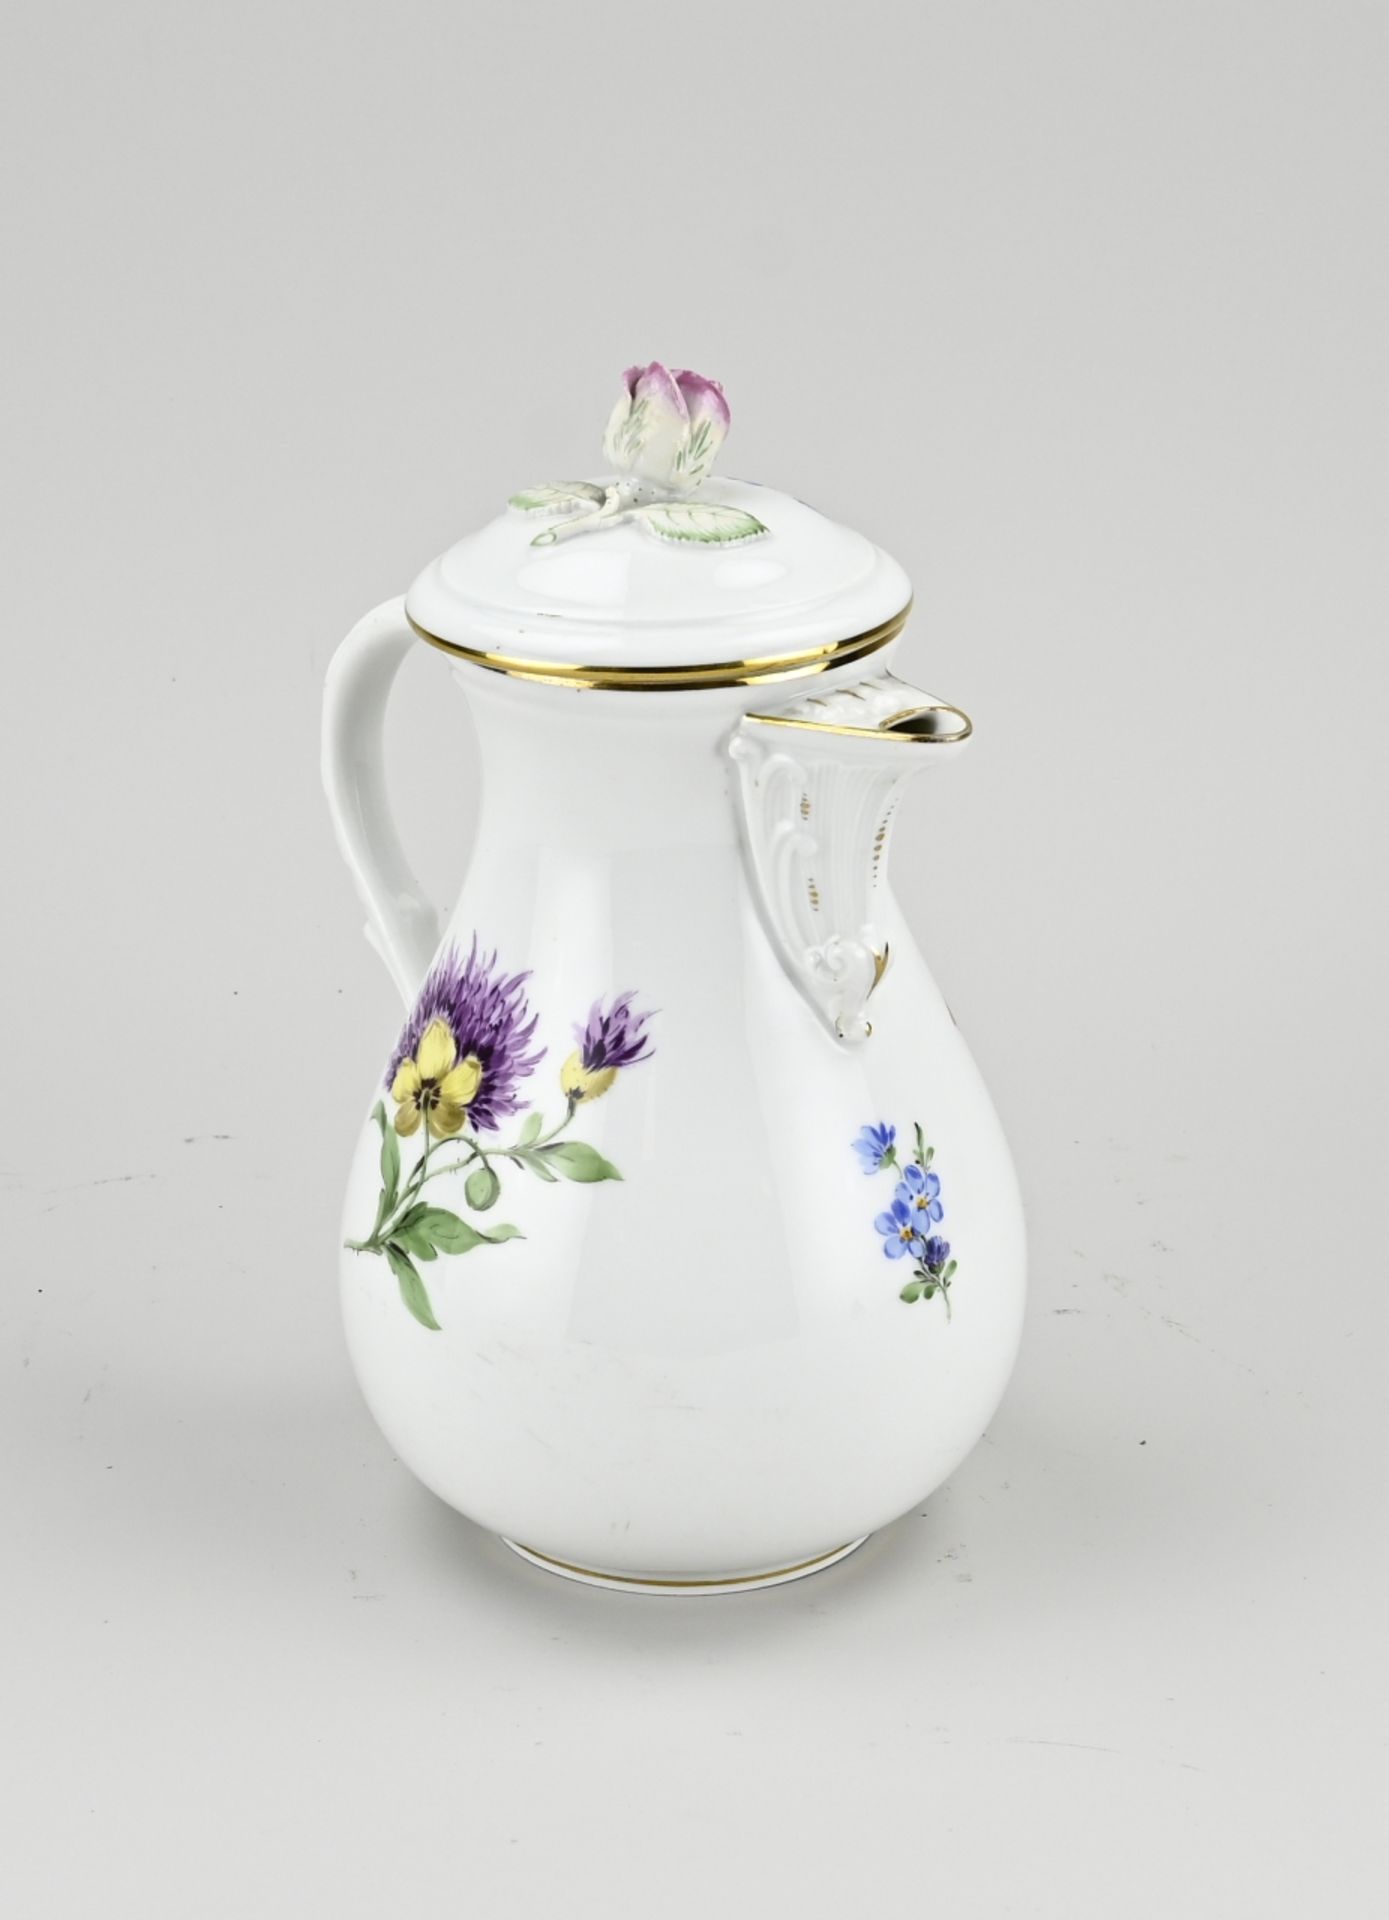 Meissen teapot - Image 2 of 3